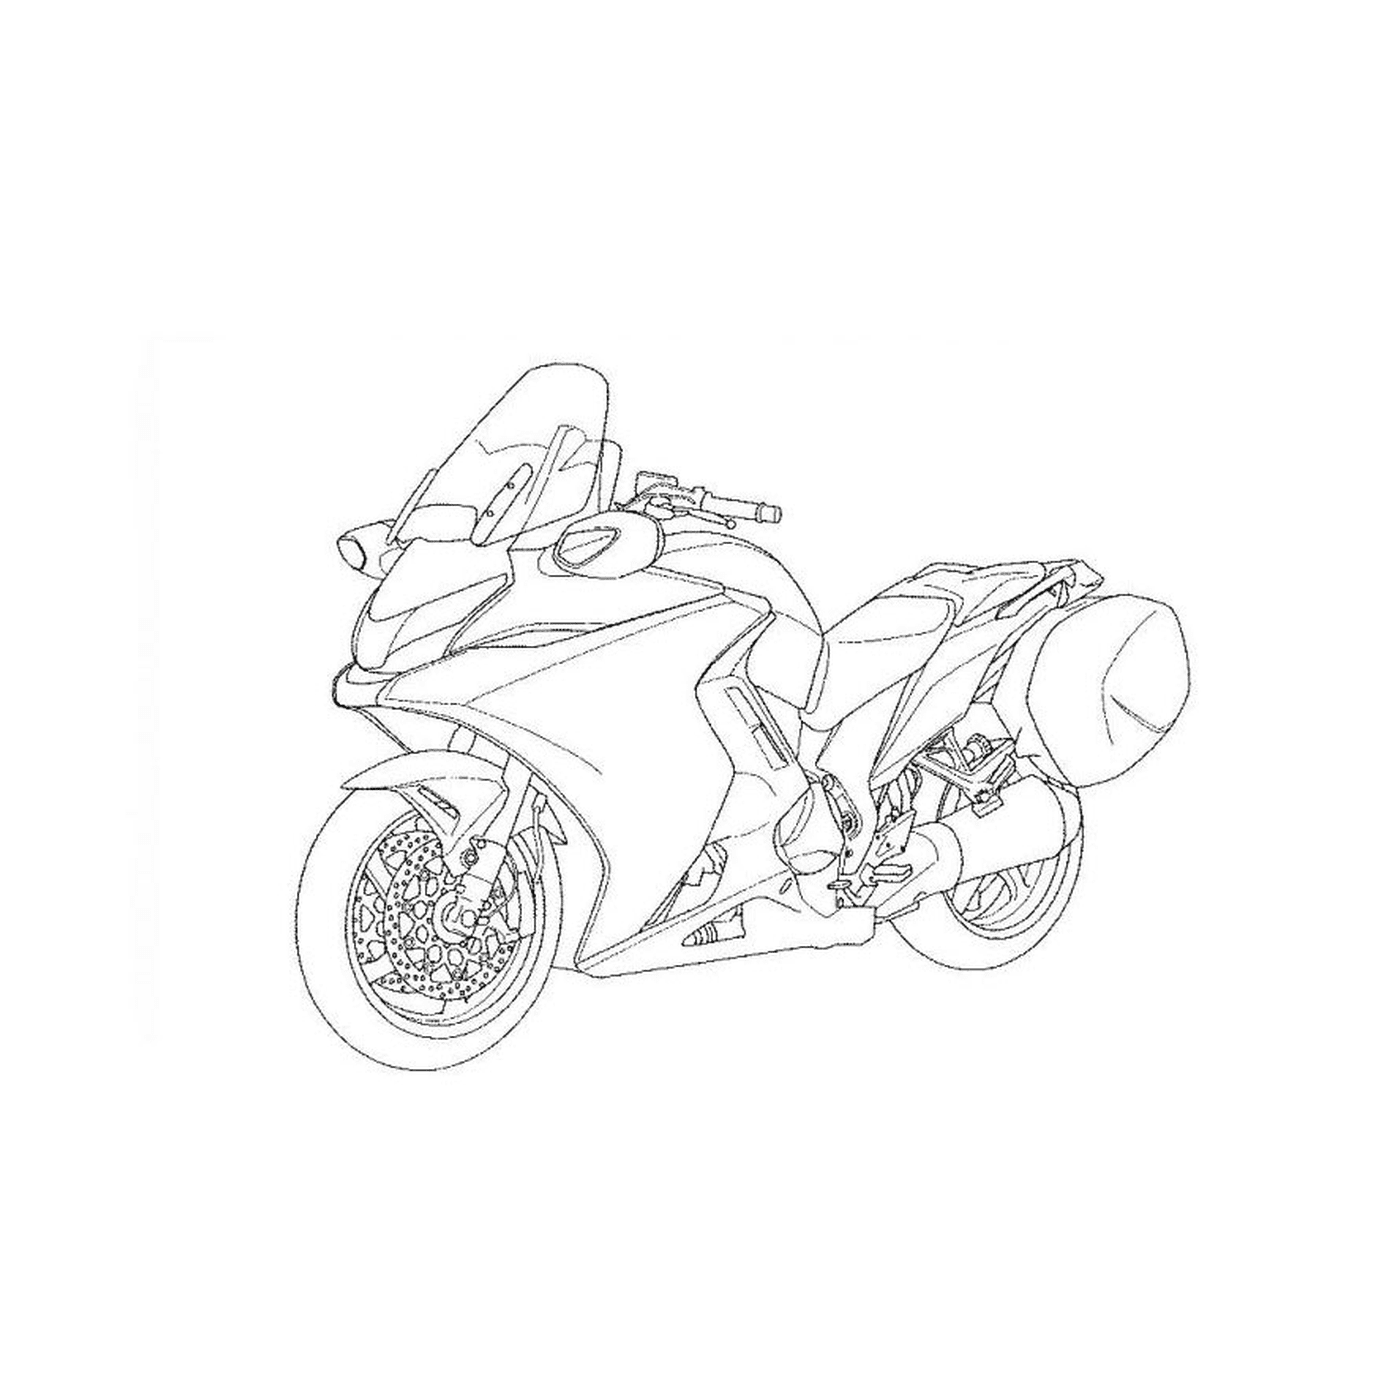  мотоцикл на белом фоне 